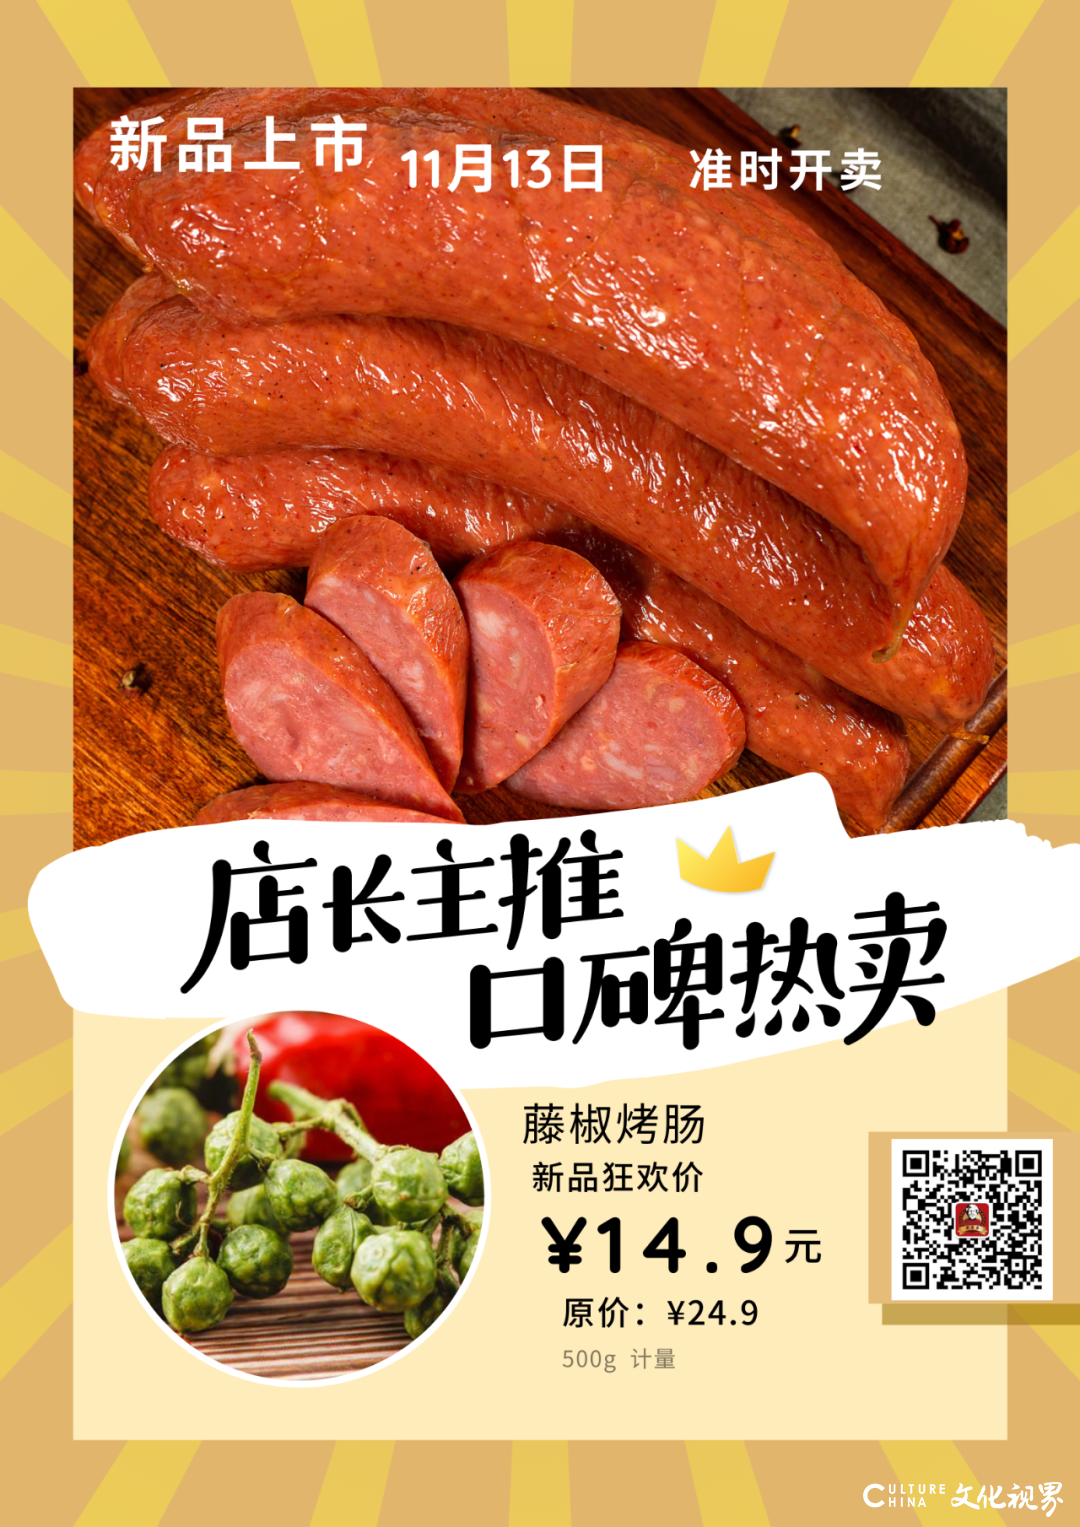 浓烈的肉香+青藤椒的清香+微麻的刺激感——黄老泰藤椒烤肠新品上市，尝鲜价14.9元/斤